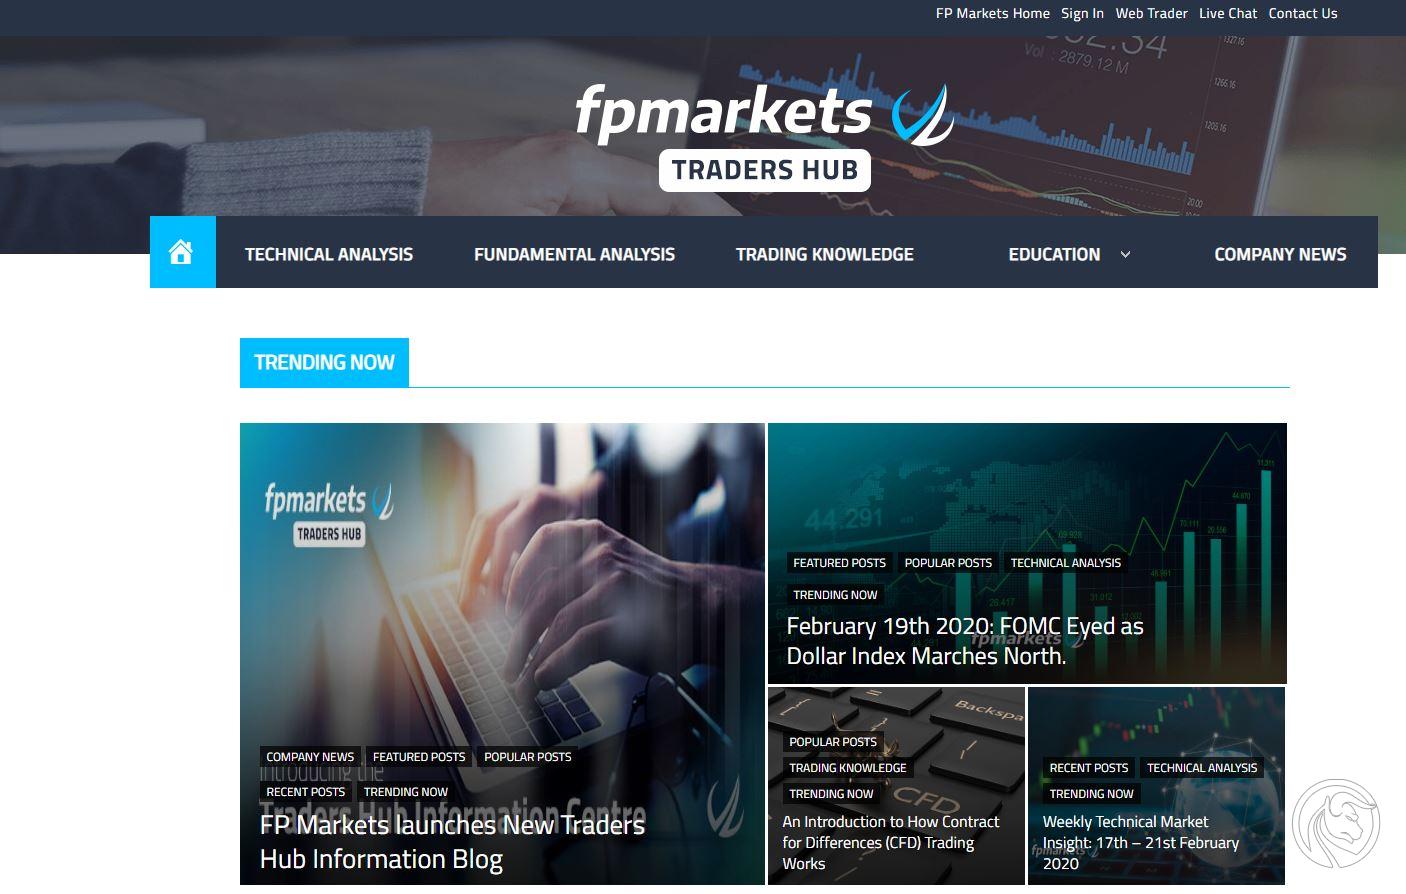 fp Markets Traders Hub